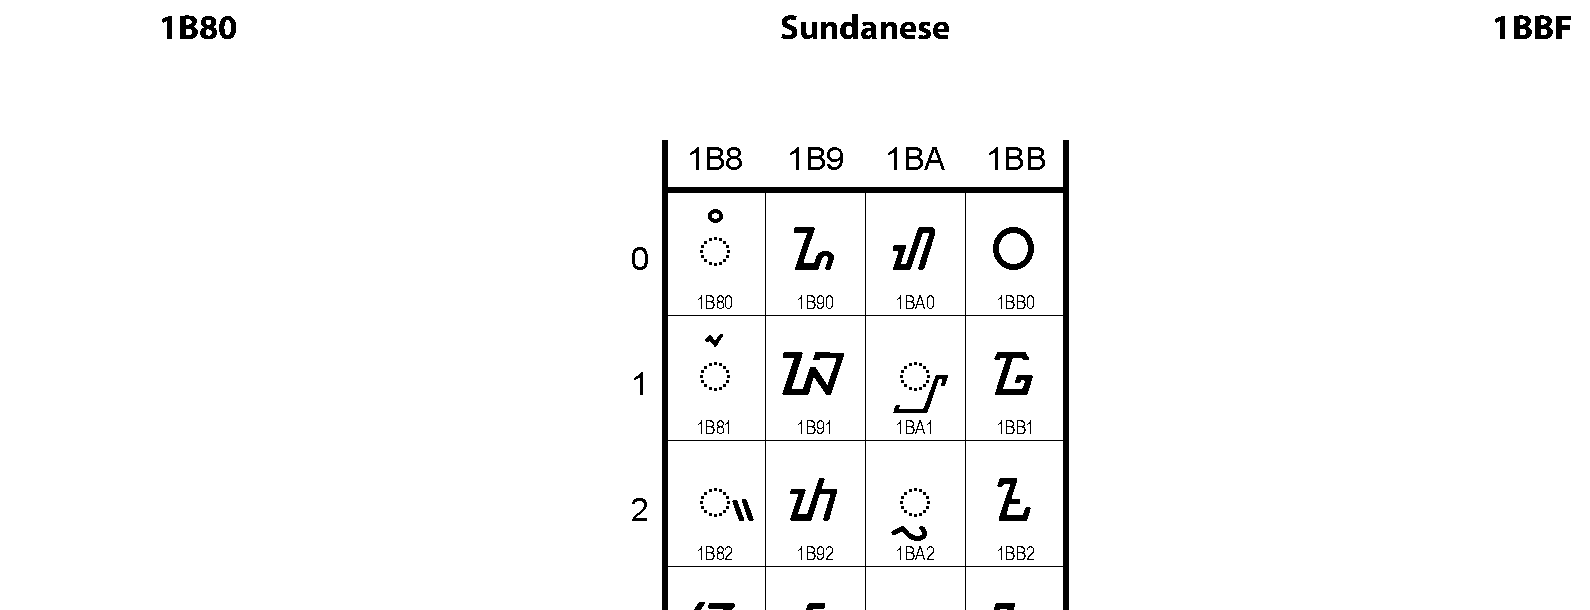 Unicode - Sundanese